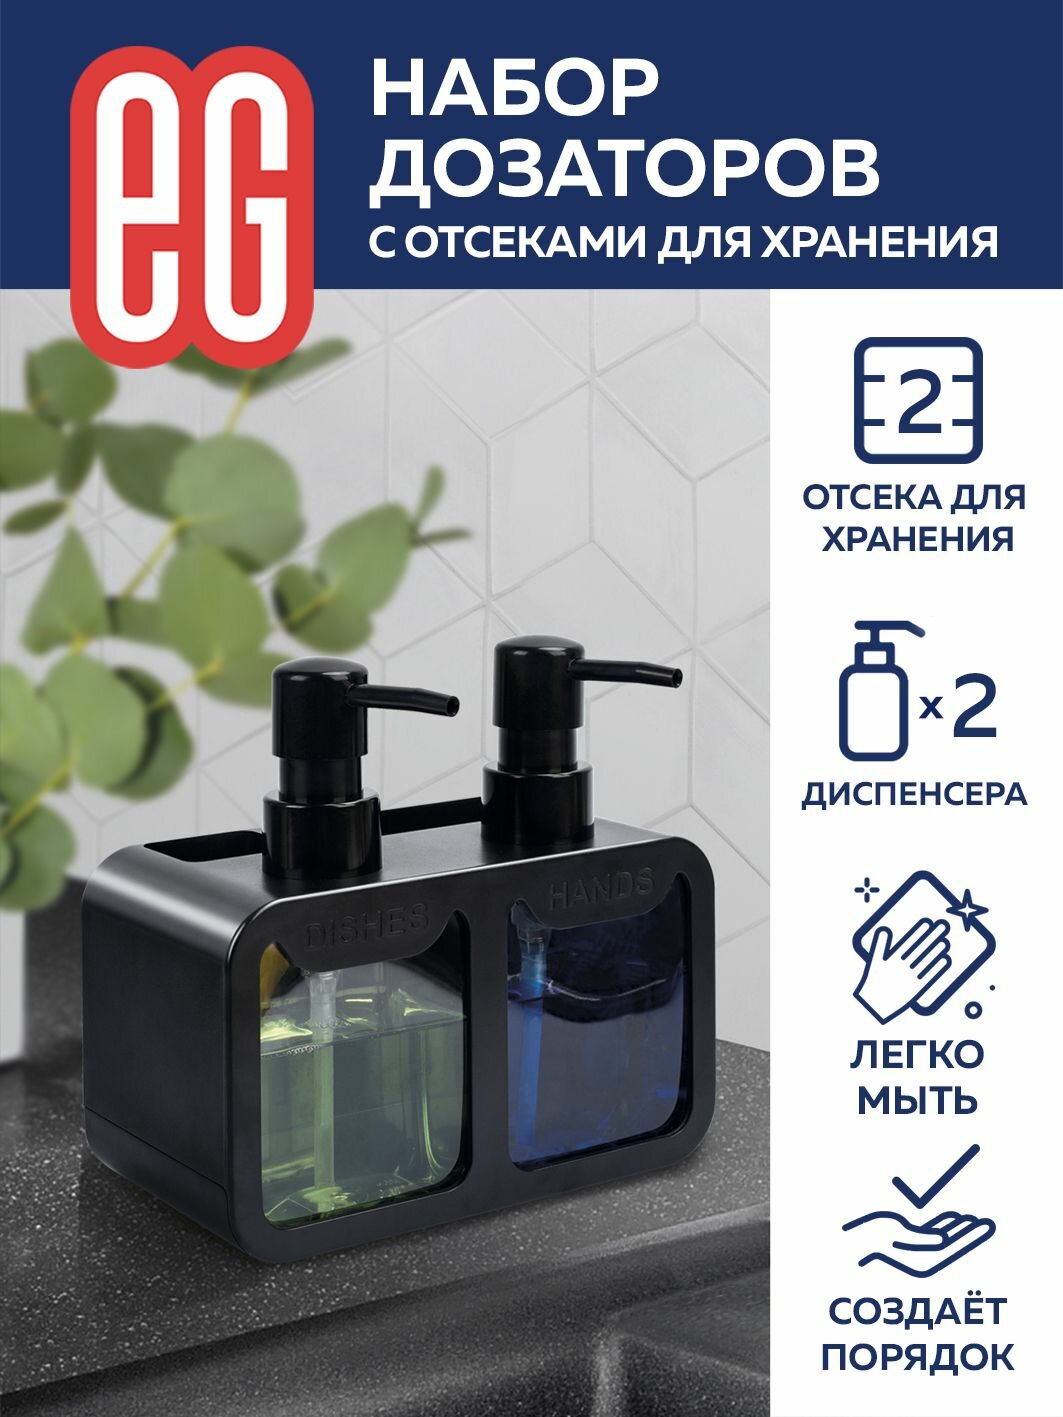 Диспенсер для моющего средства на кухню и жидкого мыла EG Еврогарант набор из 2 шт